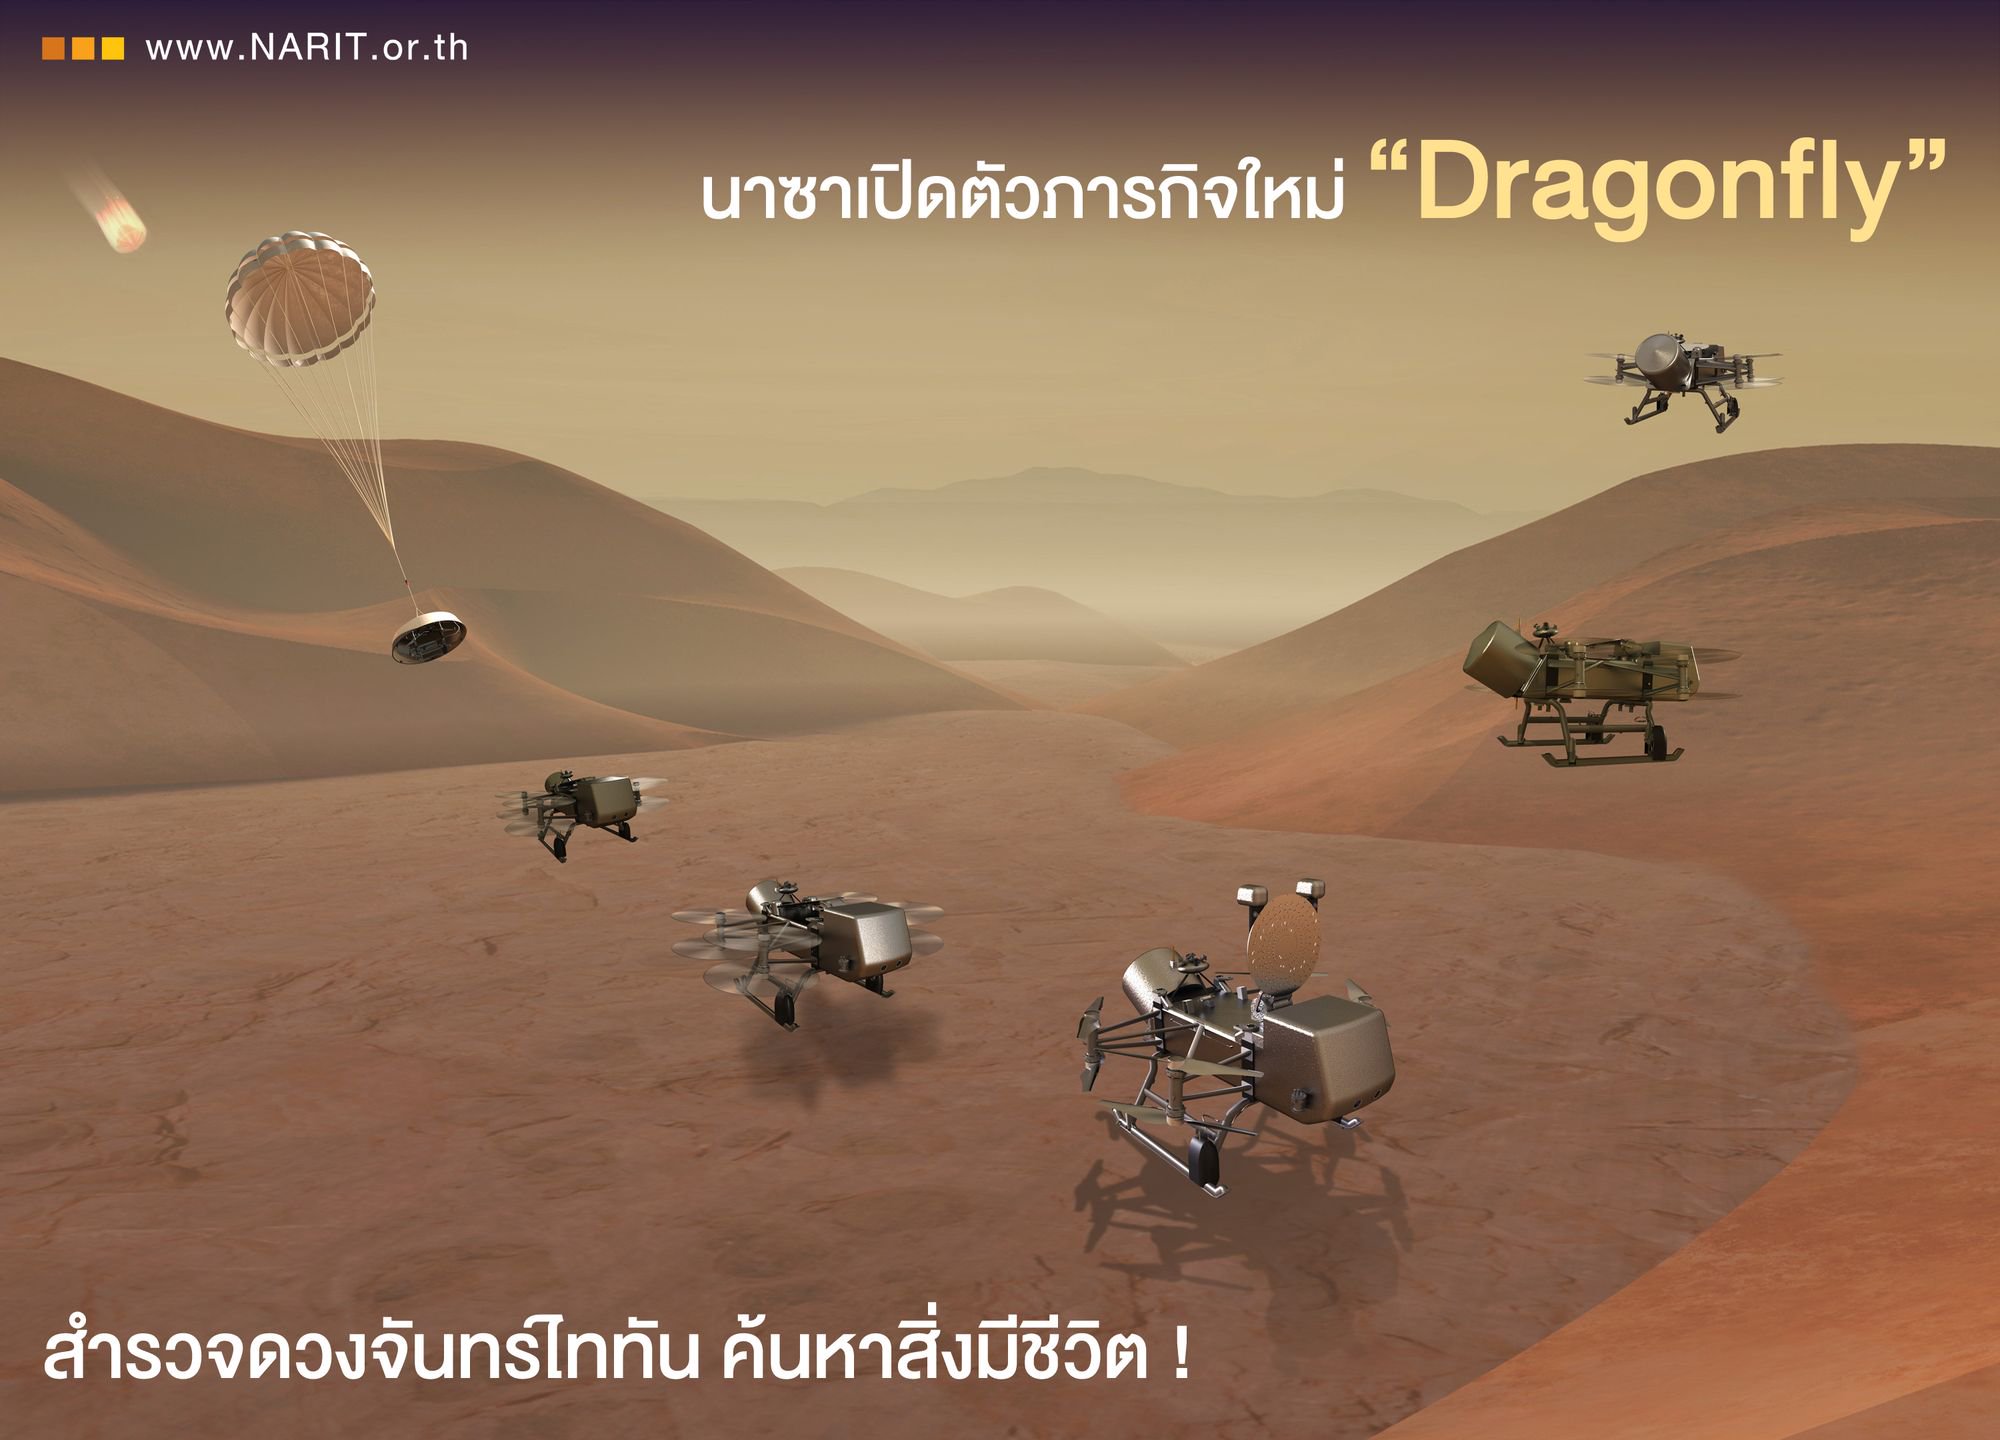 นาซาเปิดตัวภารกิจใหม่ “Dragonfly” สำรวจดวงจันทร์ไททัน ค้นหาสิ่งมีชีวิต !